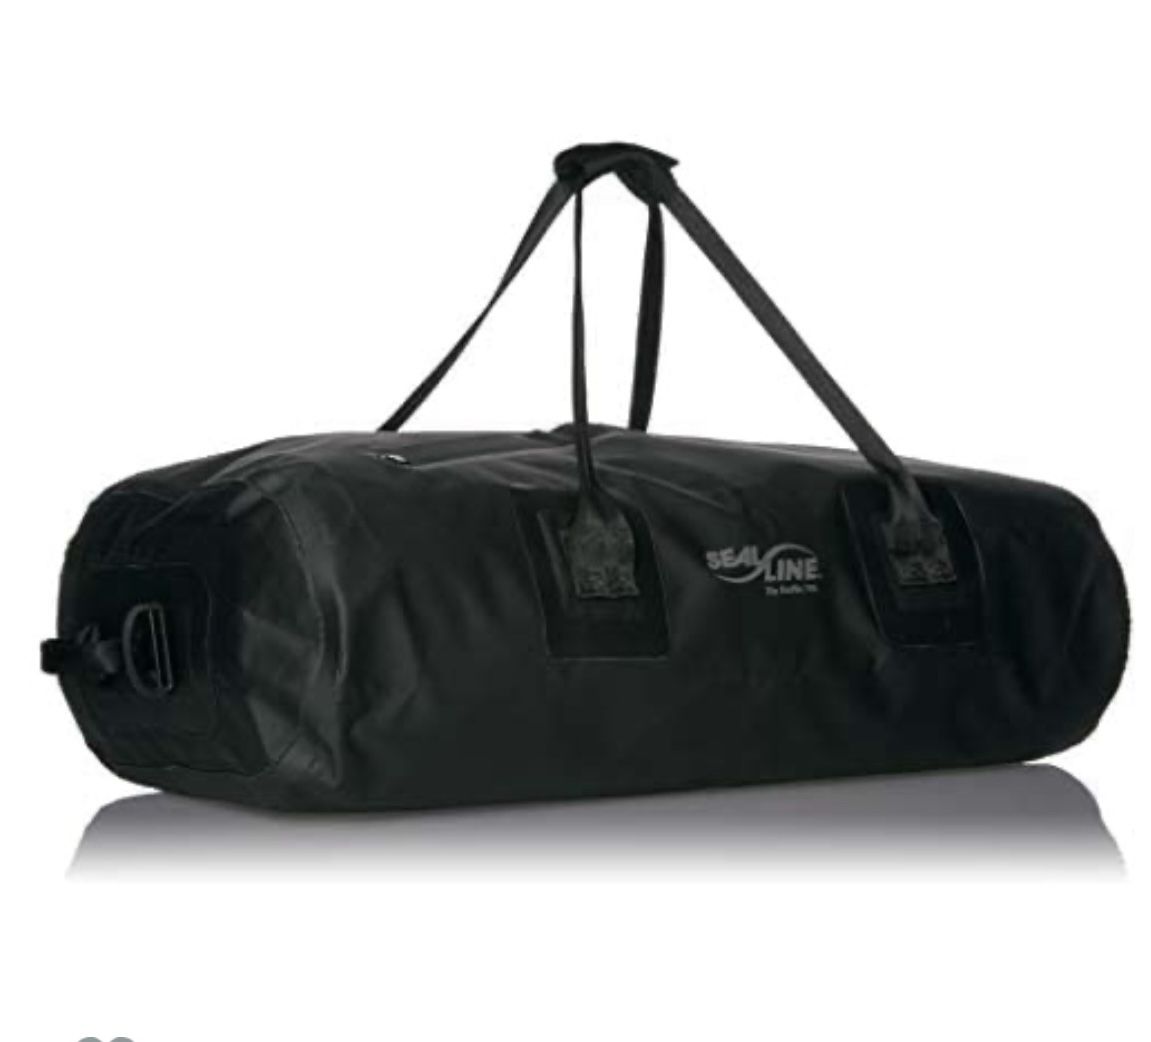 Seal Line Zip Duffle Bag